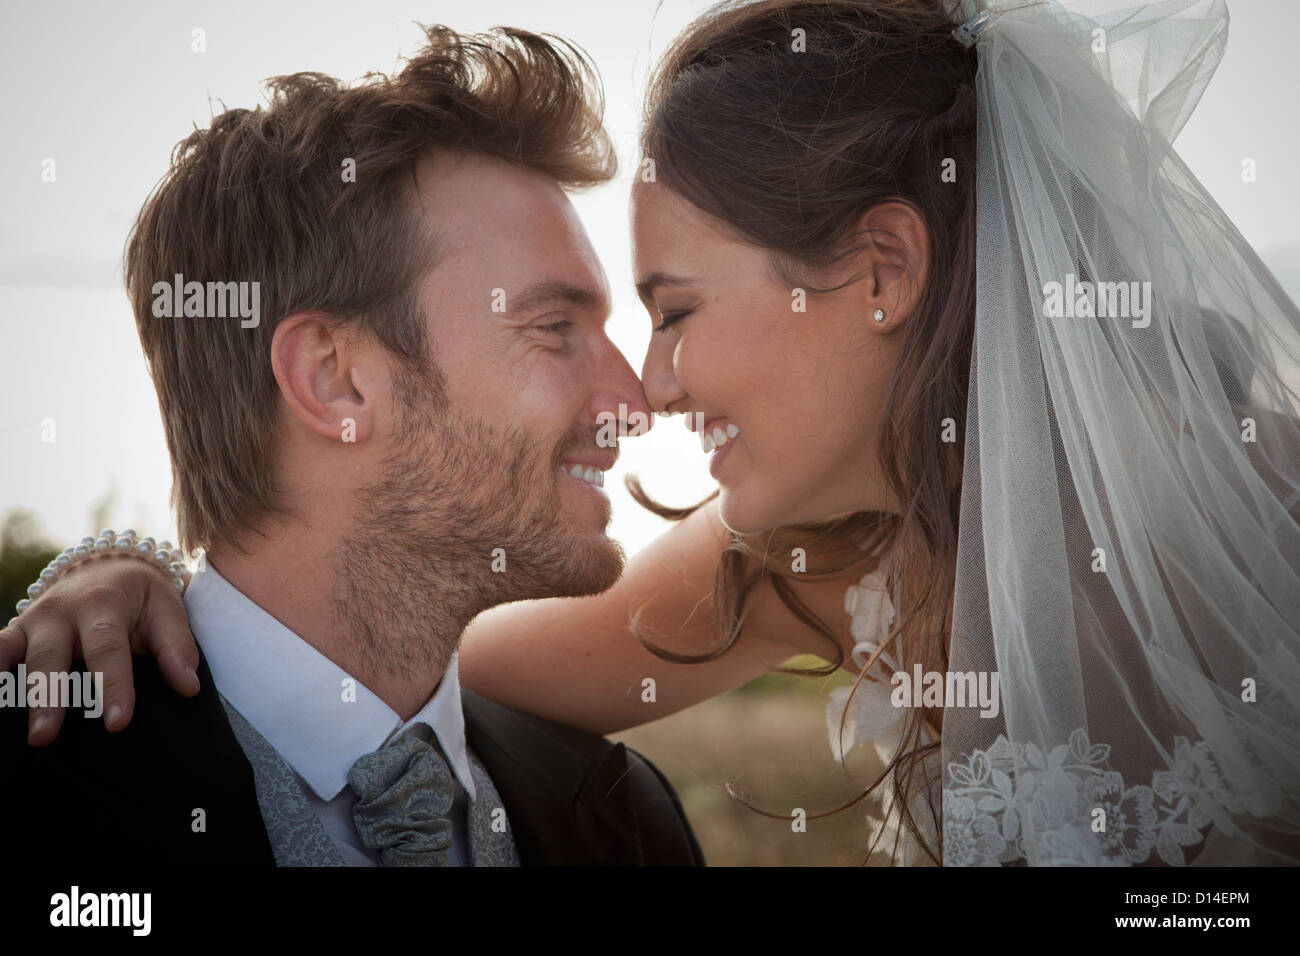 Brautpaar, die Nase zu berühren Stockfoto